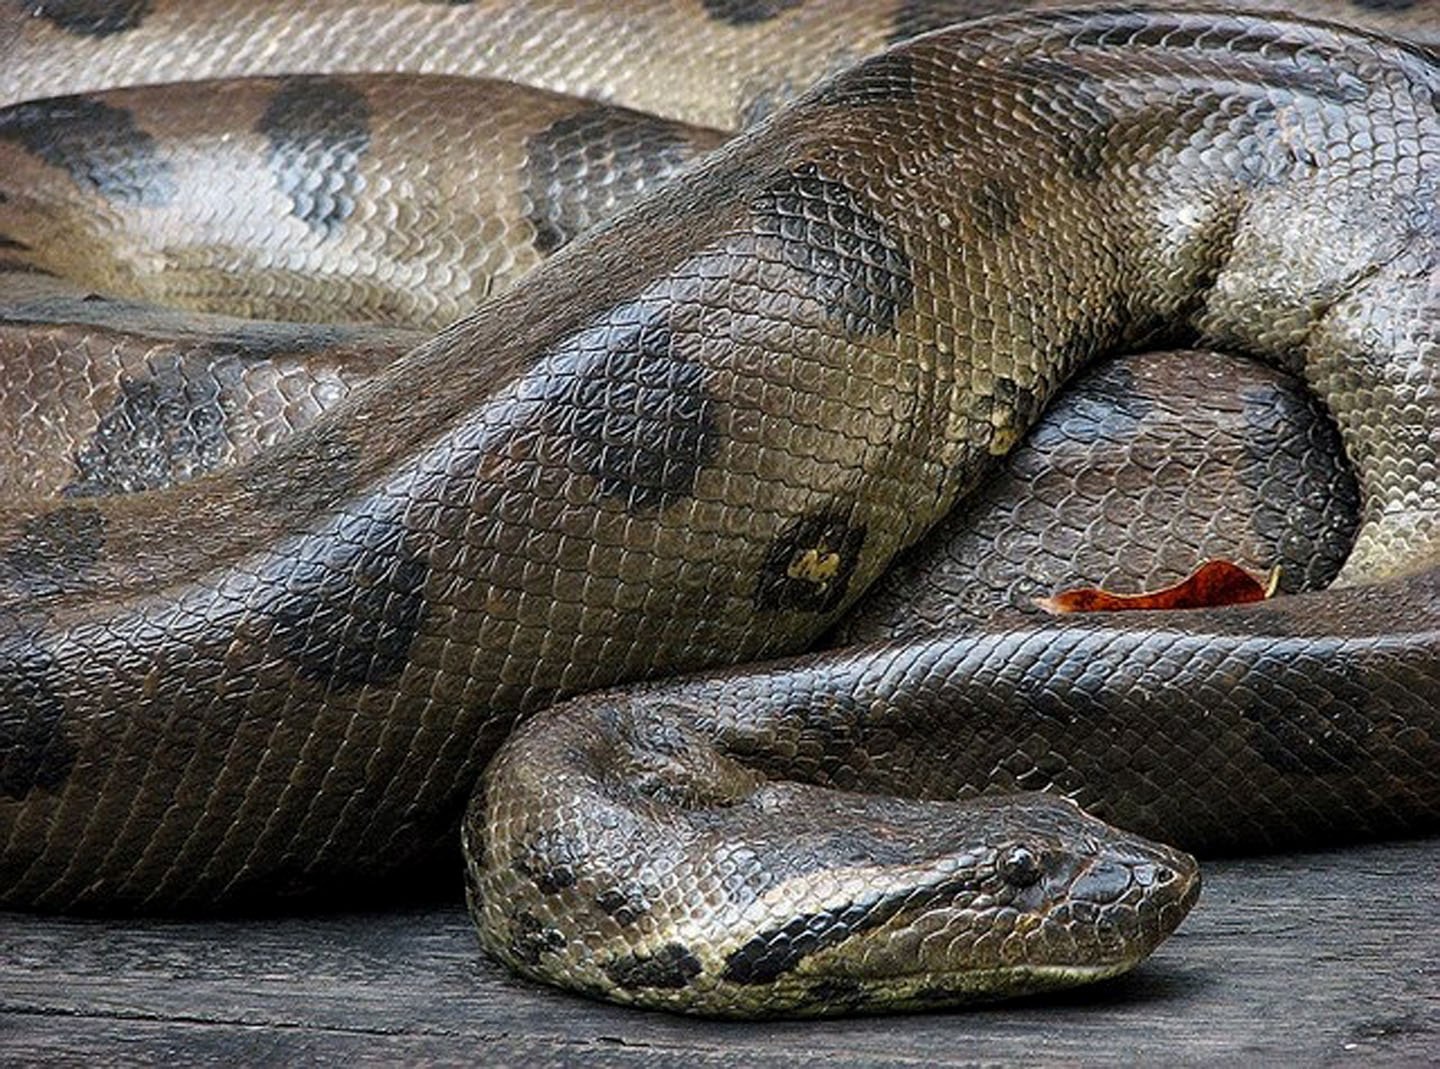 Покажи удава. Анаконда змея. Анаконда рептилия. Самая большая змея в мире Анаконда Анаконда.